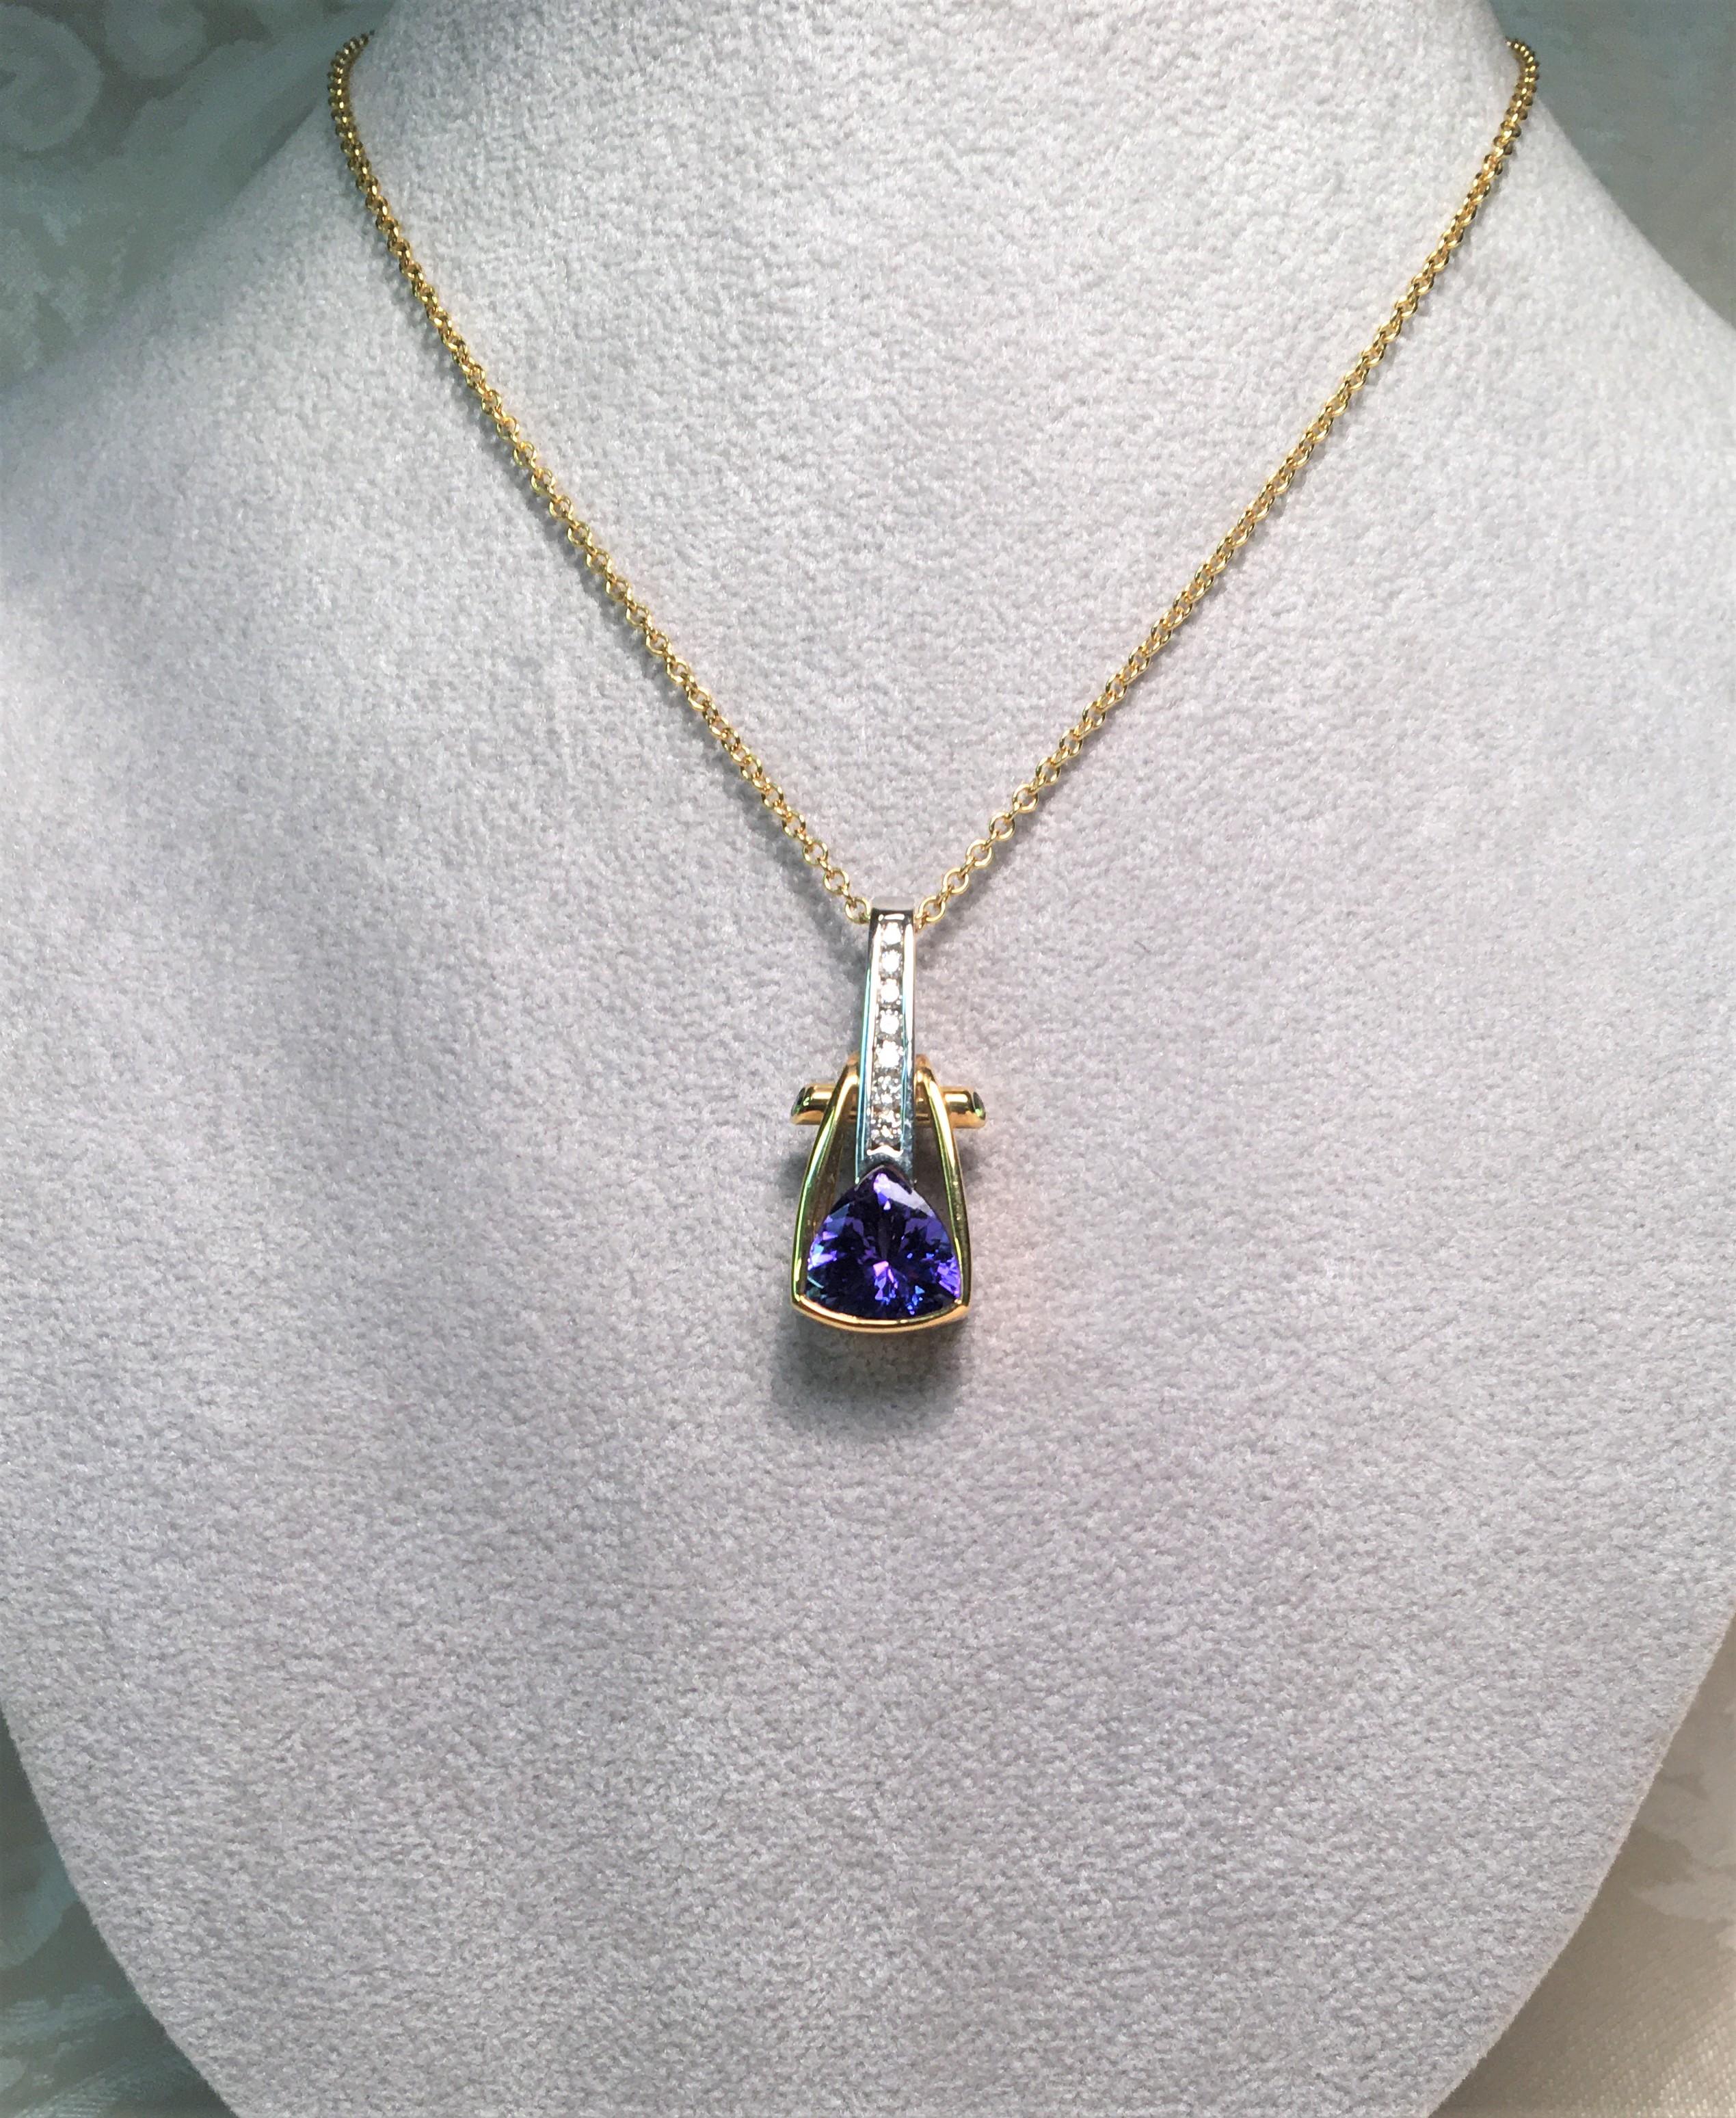 Ce magnifique pendentif de Richard Krementz Gemstones complétera n'importe quelle tenue !
2.tanzanite à trillion de 12 carats, fine couleur bleu-violet
7 diamants ronds d'un poids total d'environ 0,14 mm, sertis en canal
2 tsavorites vertes rondes à